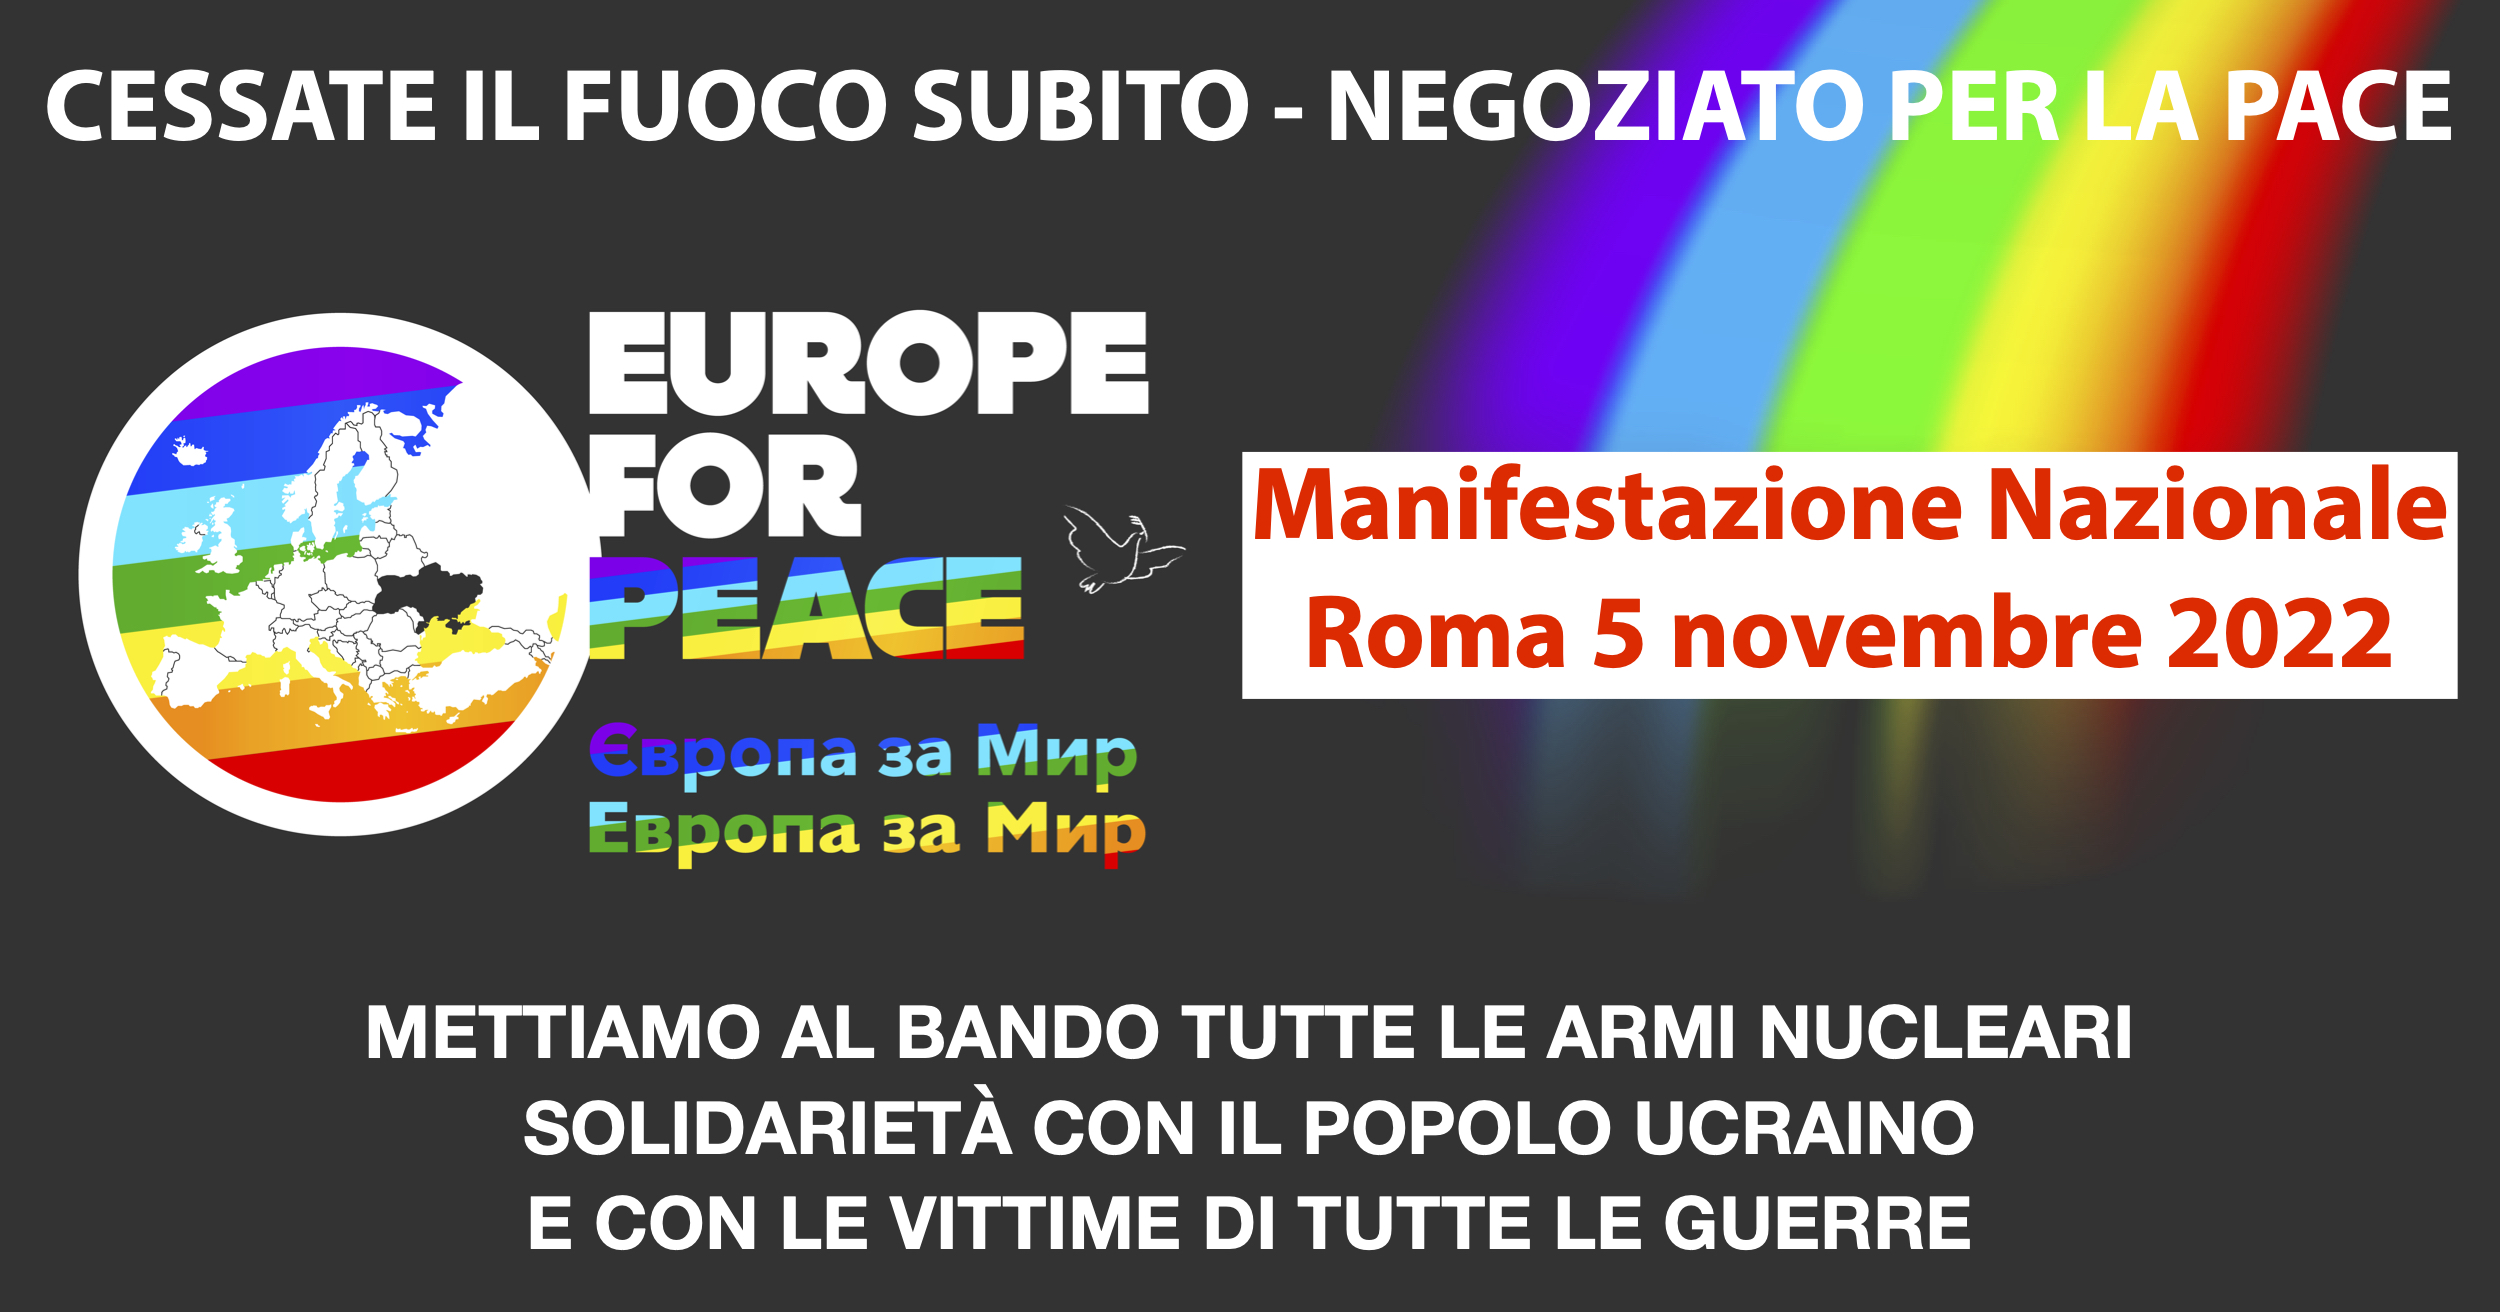 Le adesioni alla Manifestazione Nazionale per la Pace “Europe for Peace” del 5 novembre 2022